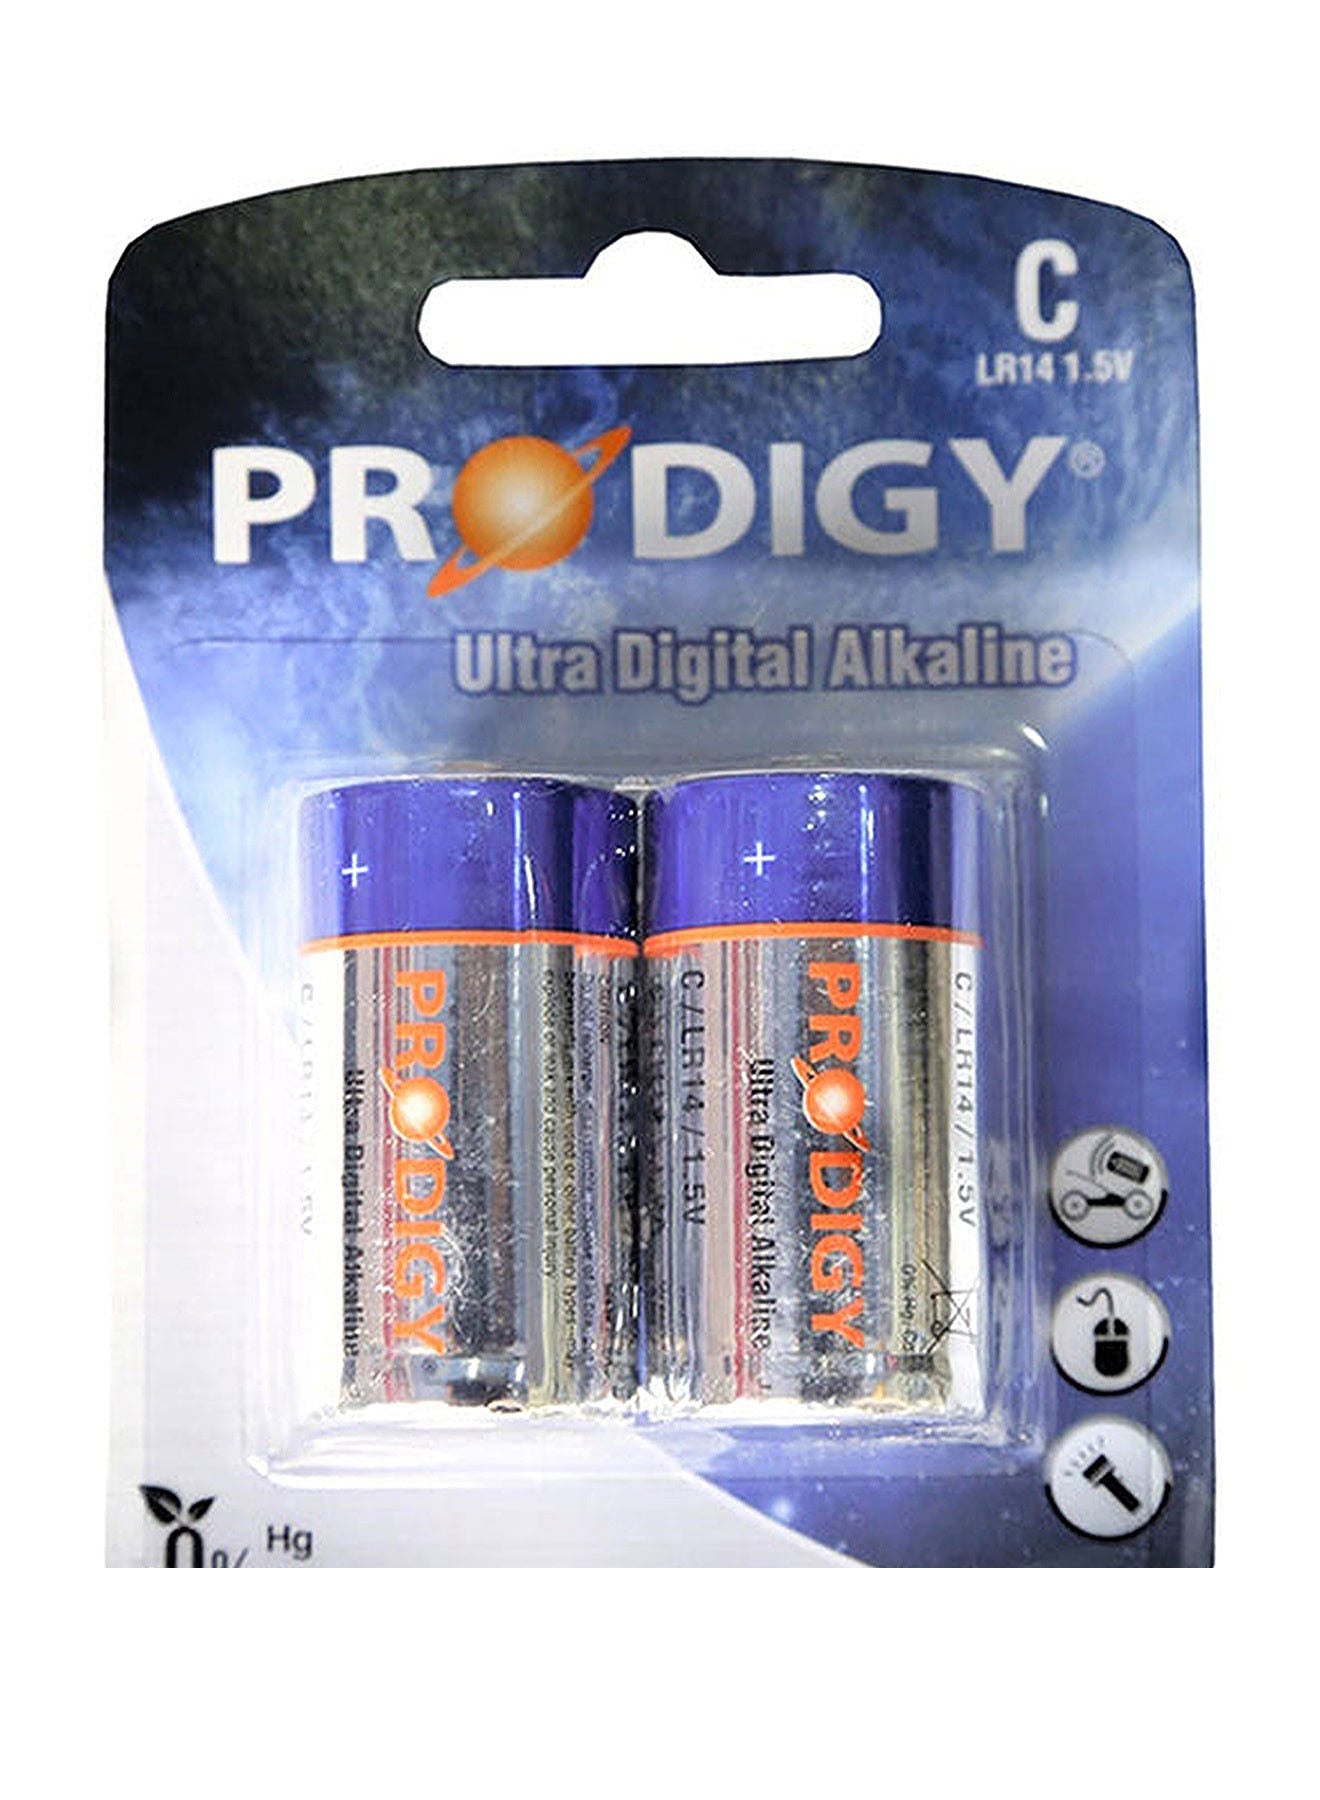 Prodigy Alkaline LR20UD 2B D2 Value Pack of 12 